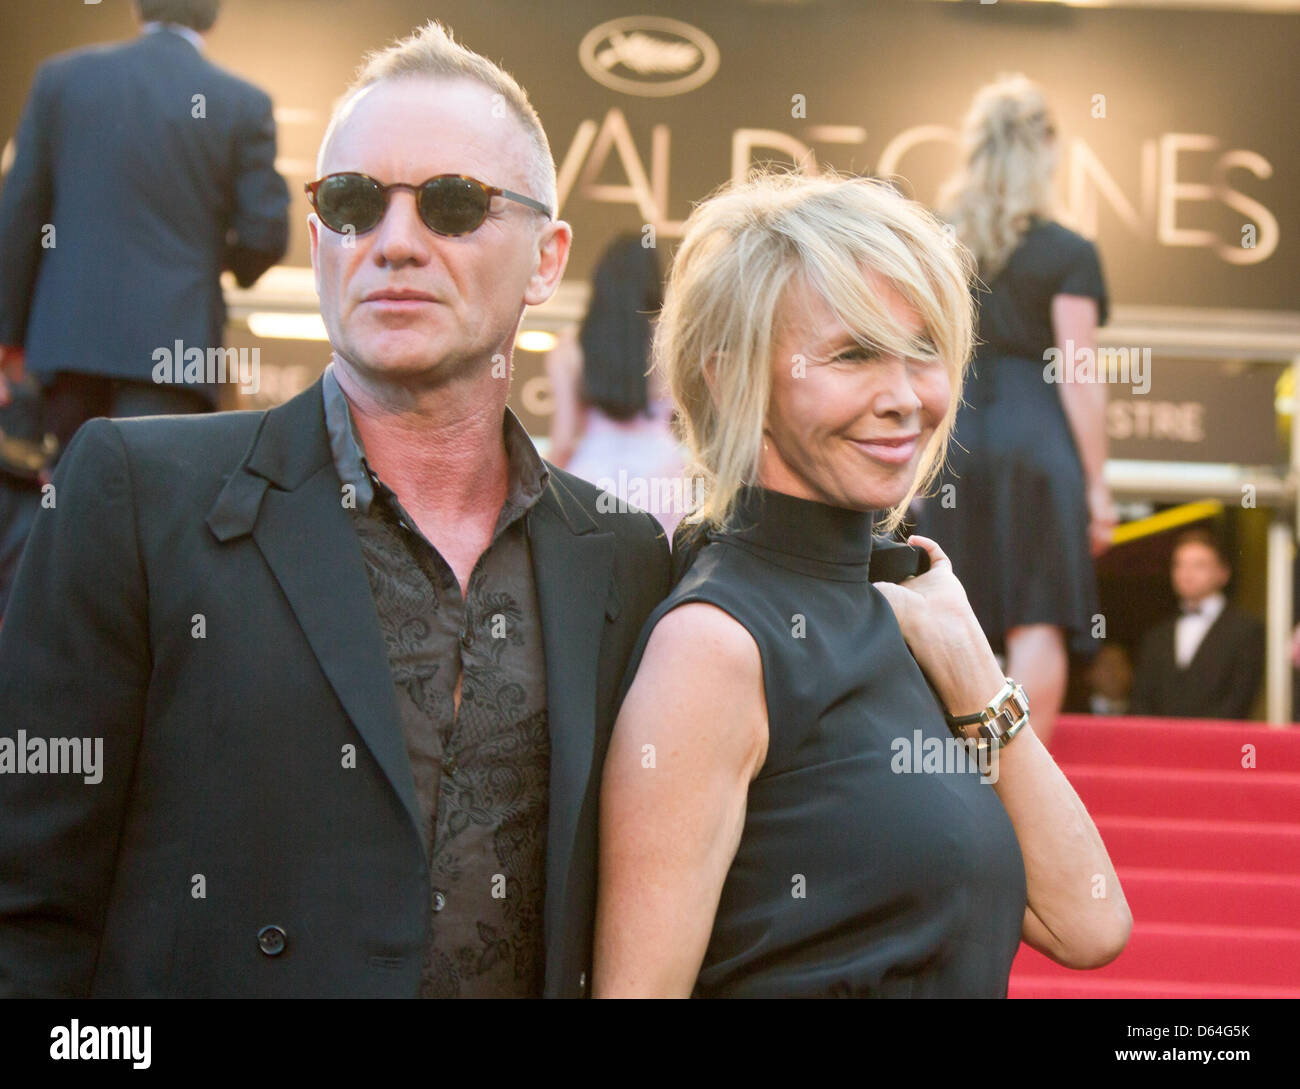 Sänger Sting und seine Frau Trudie Styler kommen bei der Premiere von "Mud" während der 65. Filmfestspiele von Cannes am Palais des Festivals in Cannes, Frankreich, am 26. Mai 2012. Foto: Hubert Boesl Stockfoto